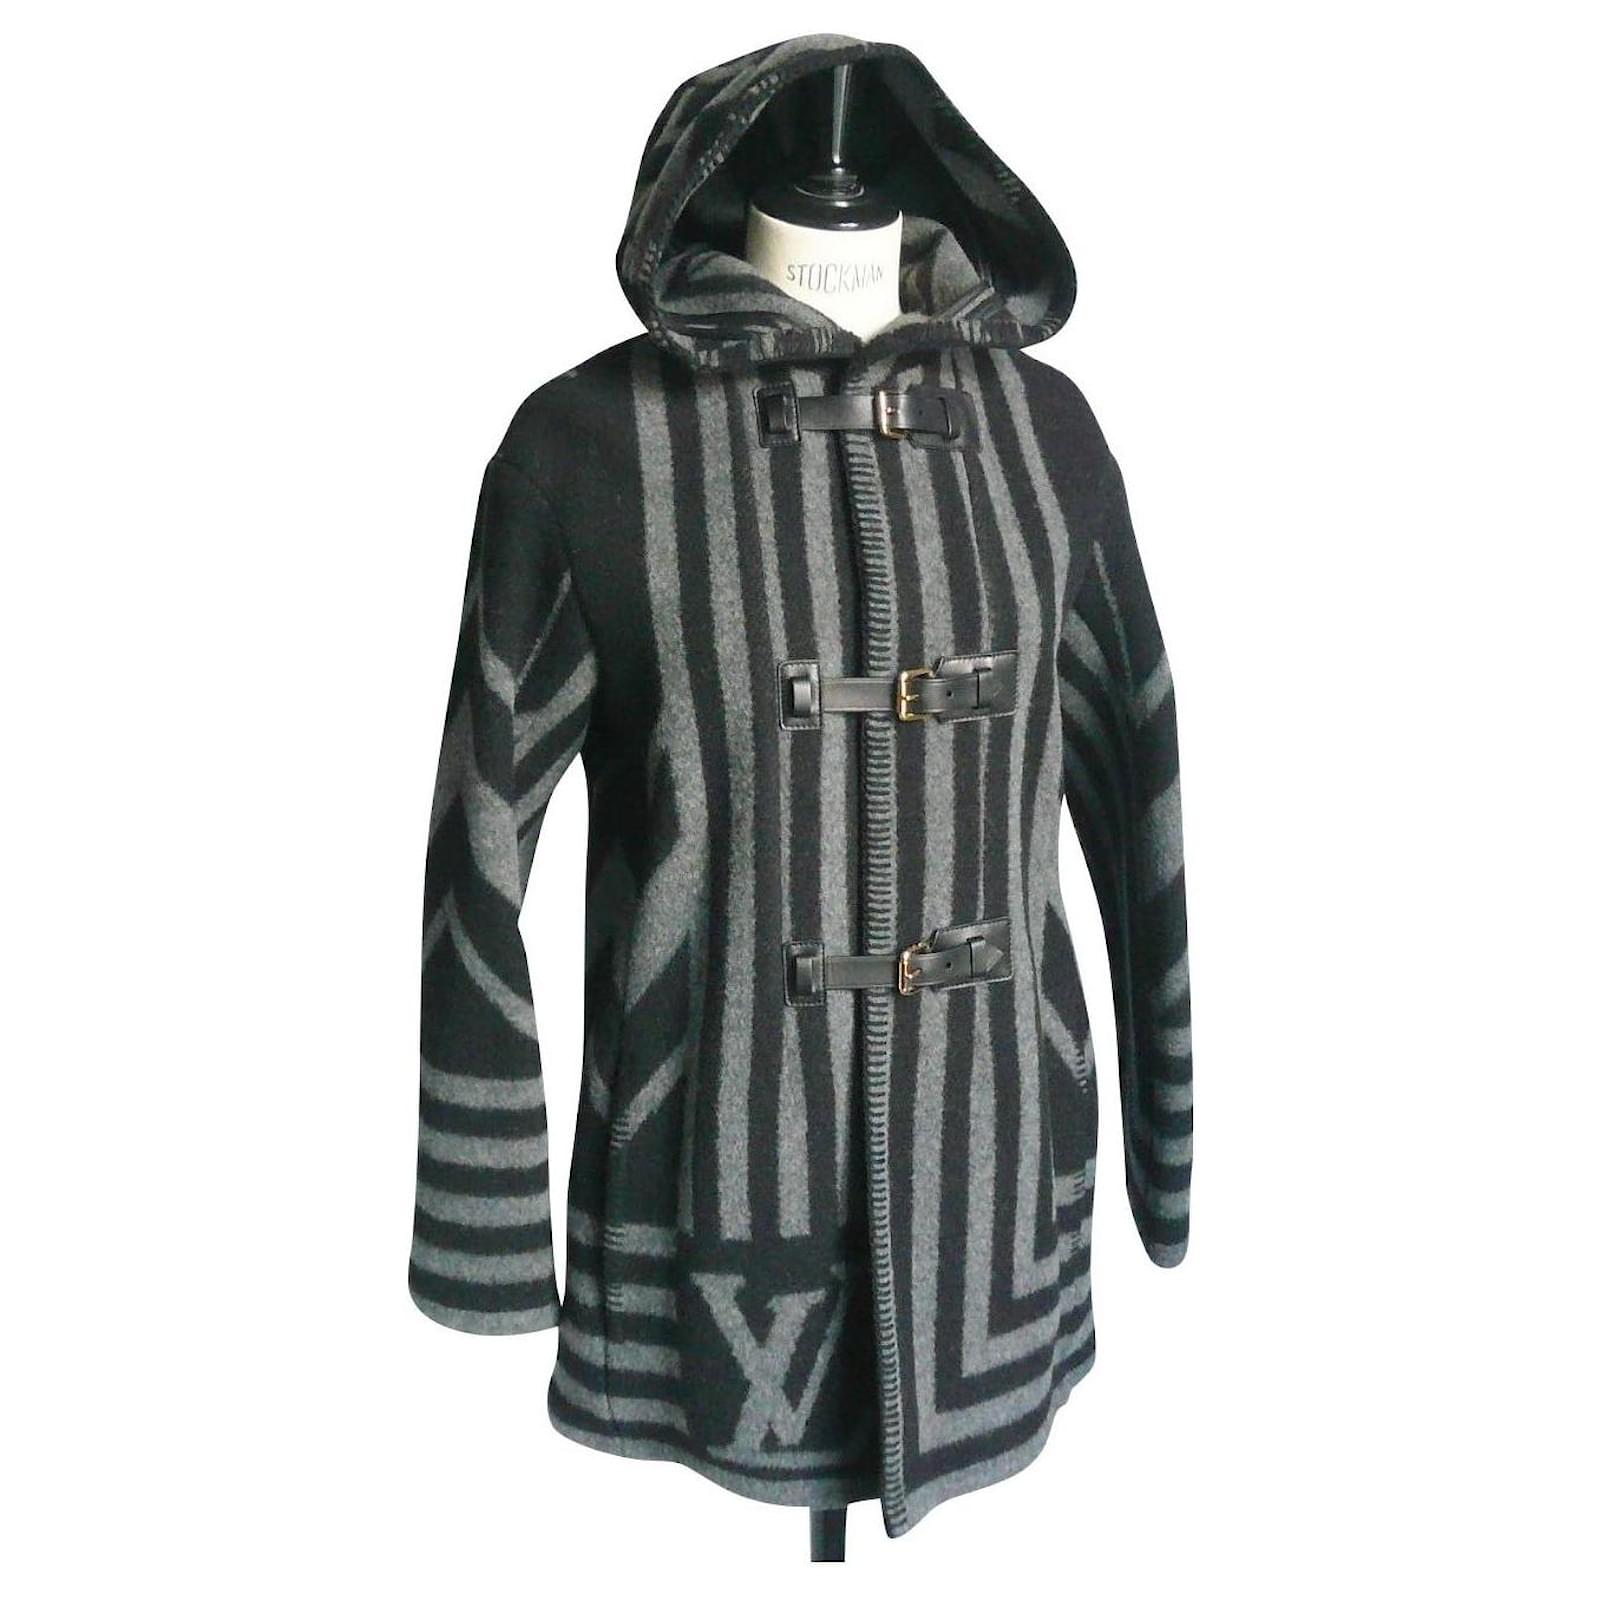 Louis Vuitton Fur-Trimmed Wool & Cashmere Duffle Coat - Black